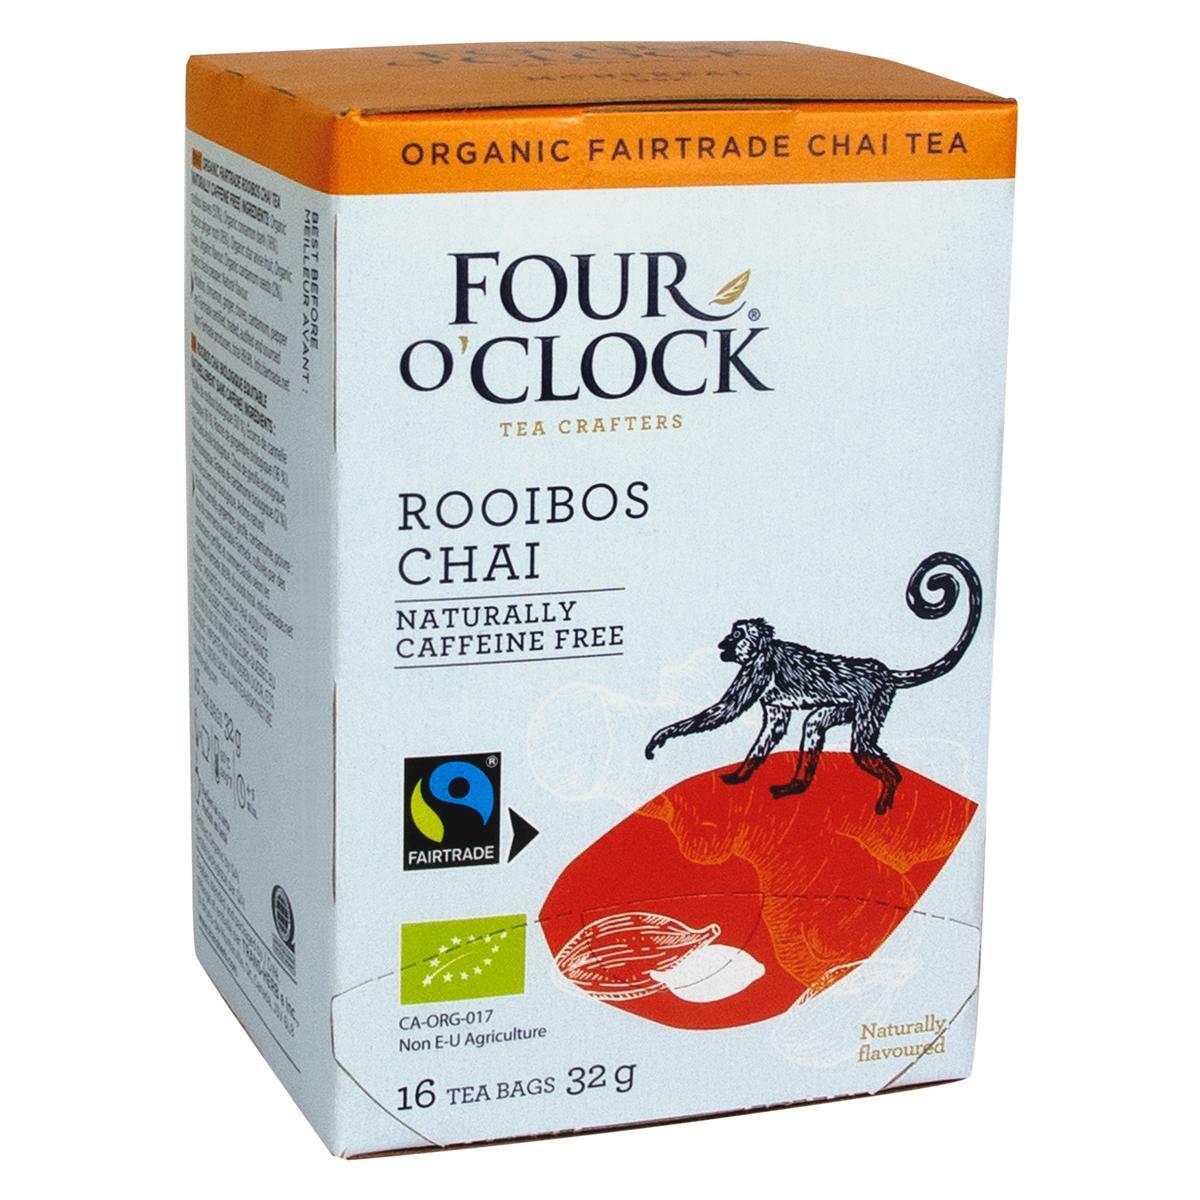 Four O’Clock's Four O'Clock ROOIBOS CHAI'